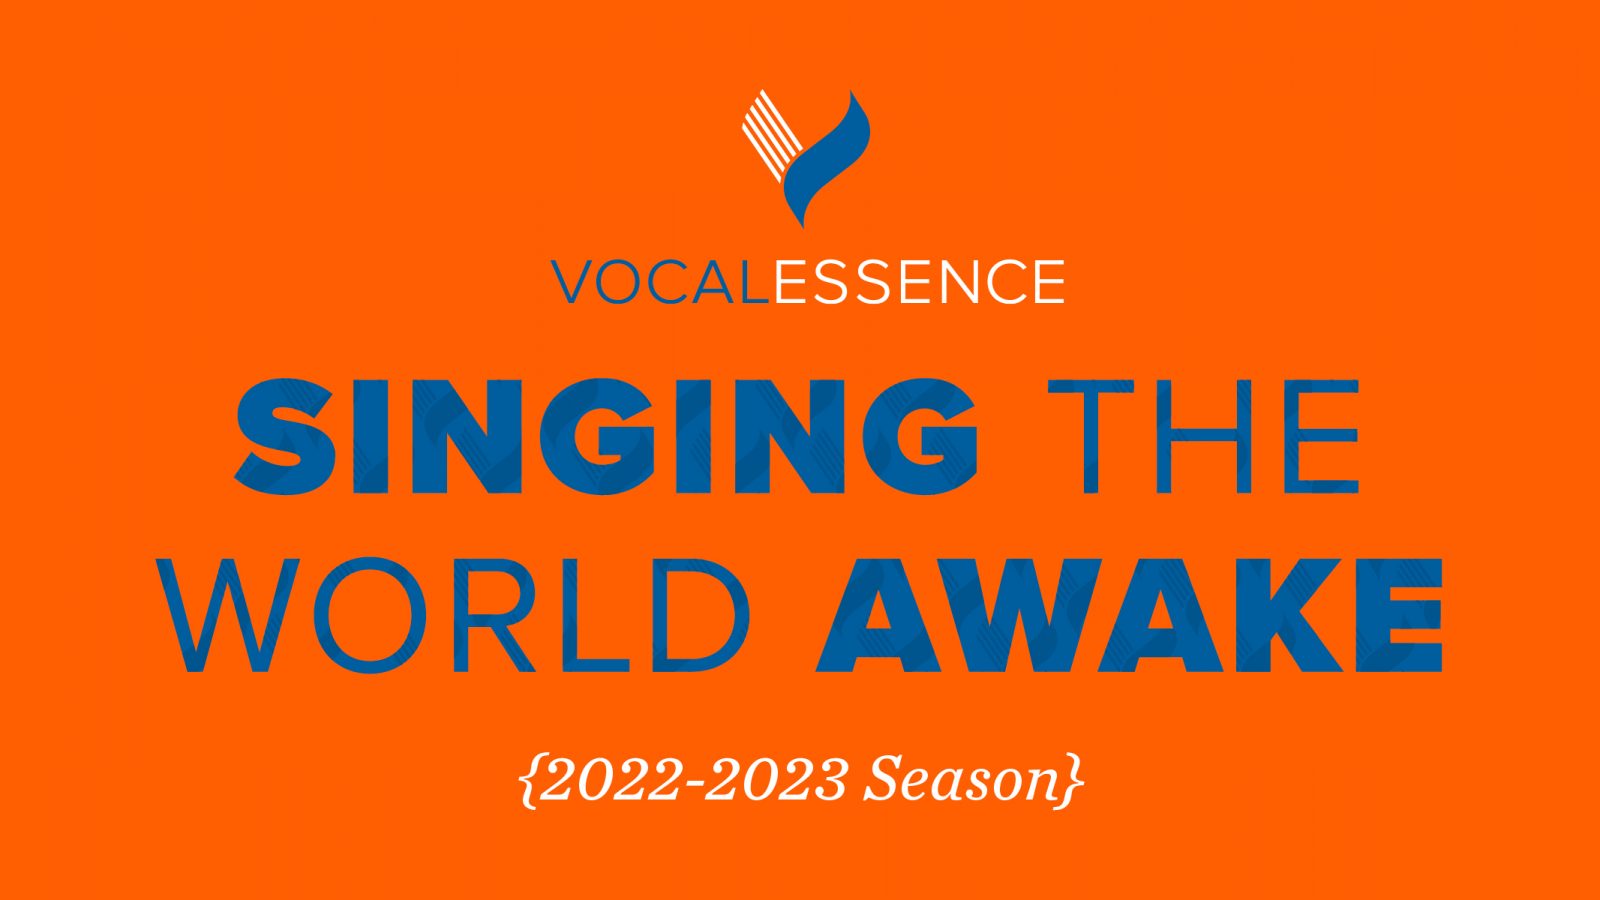 VocalEssence logo, Singing the World Awake, and 2022-2023 Season on an orange background